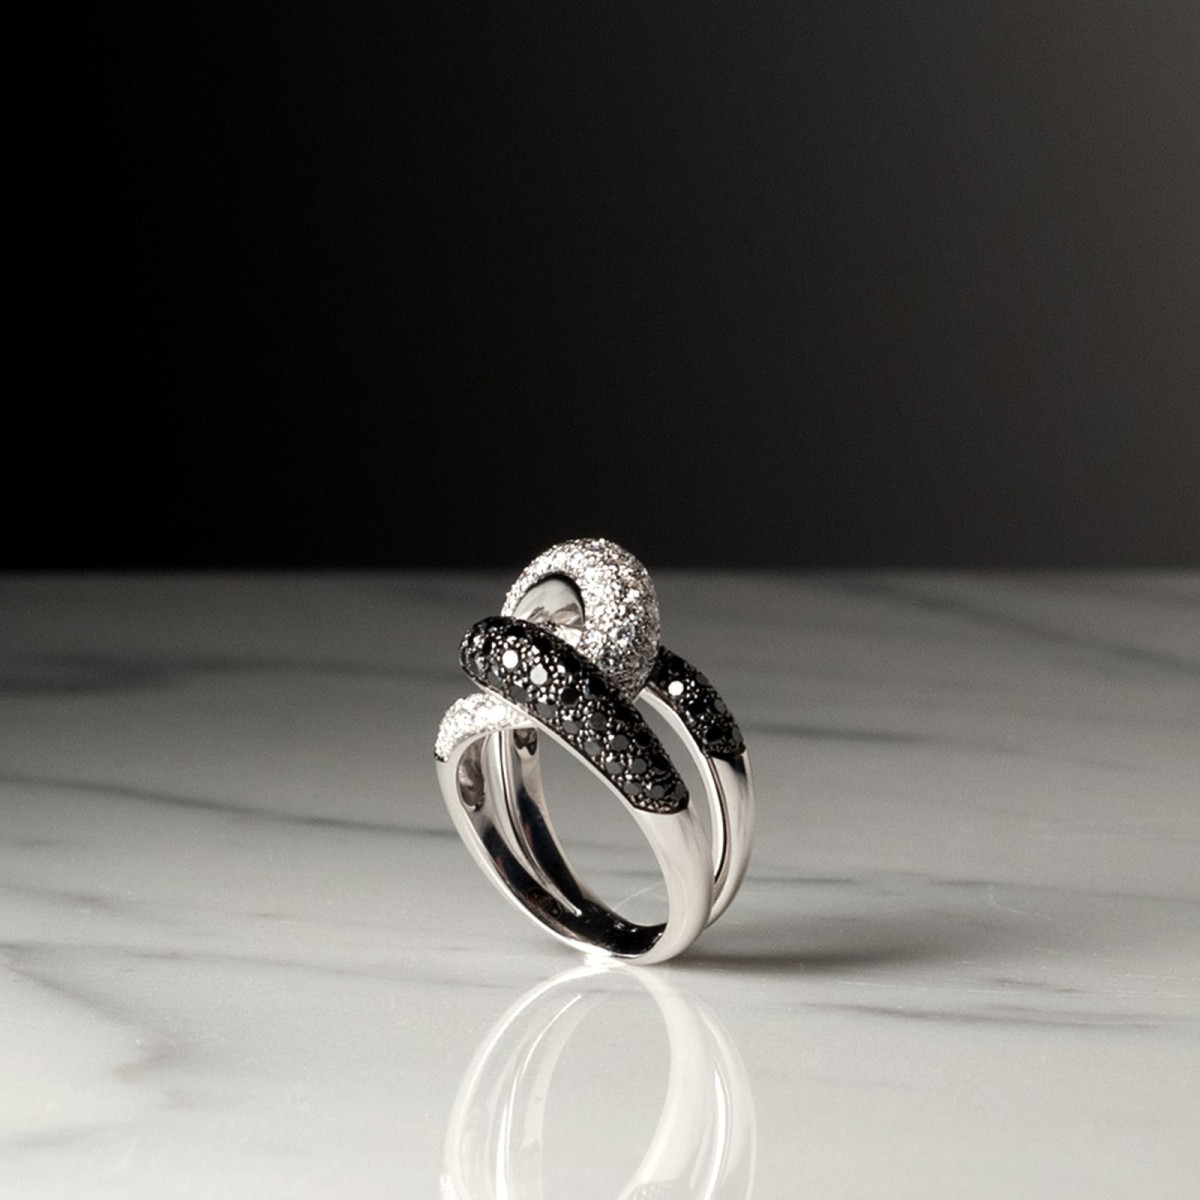 TOI ET MOI MAILLE 2143 - Handmade ring